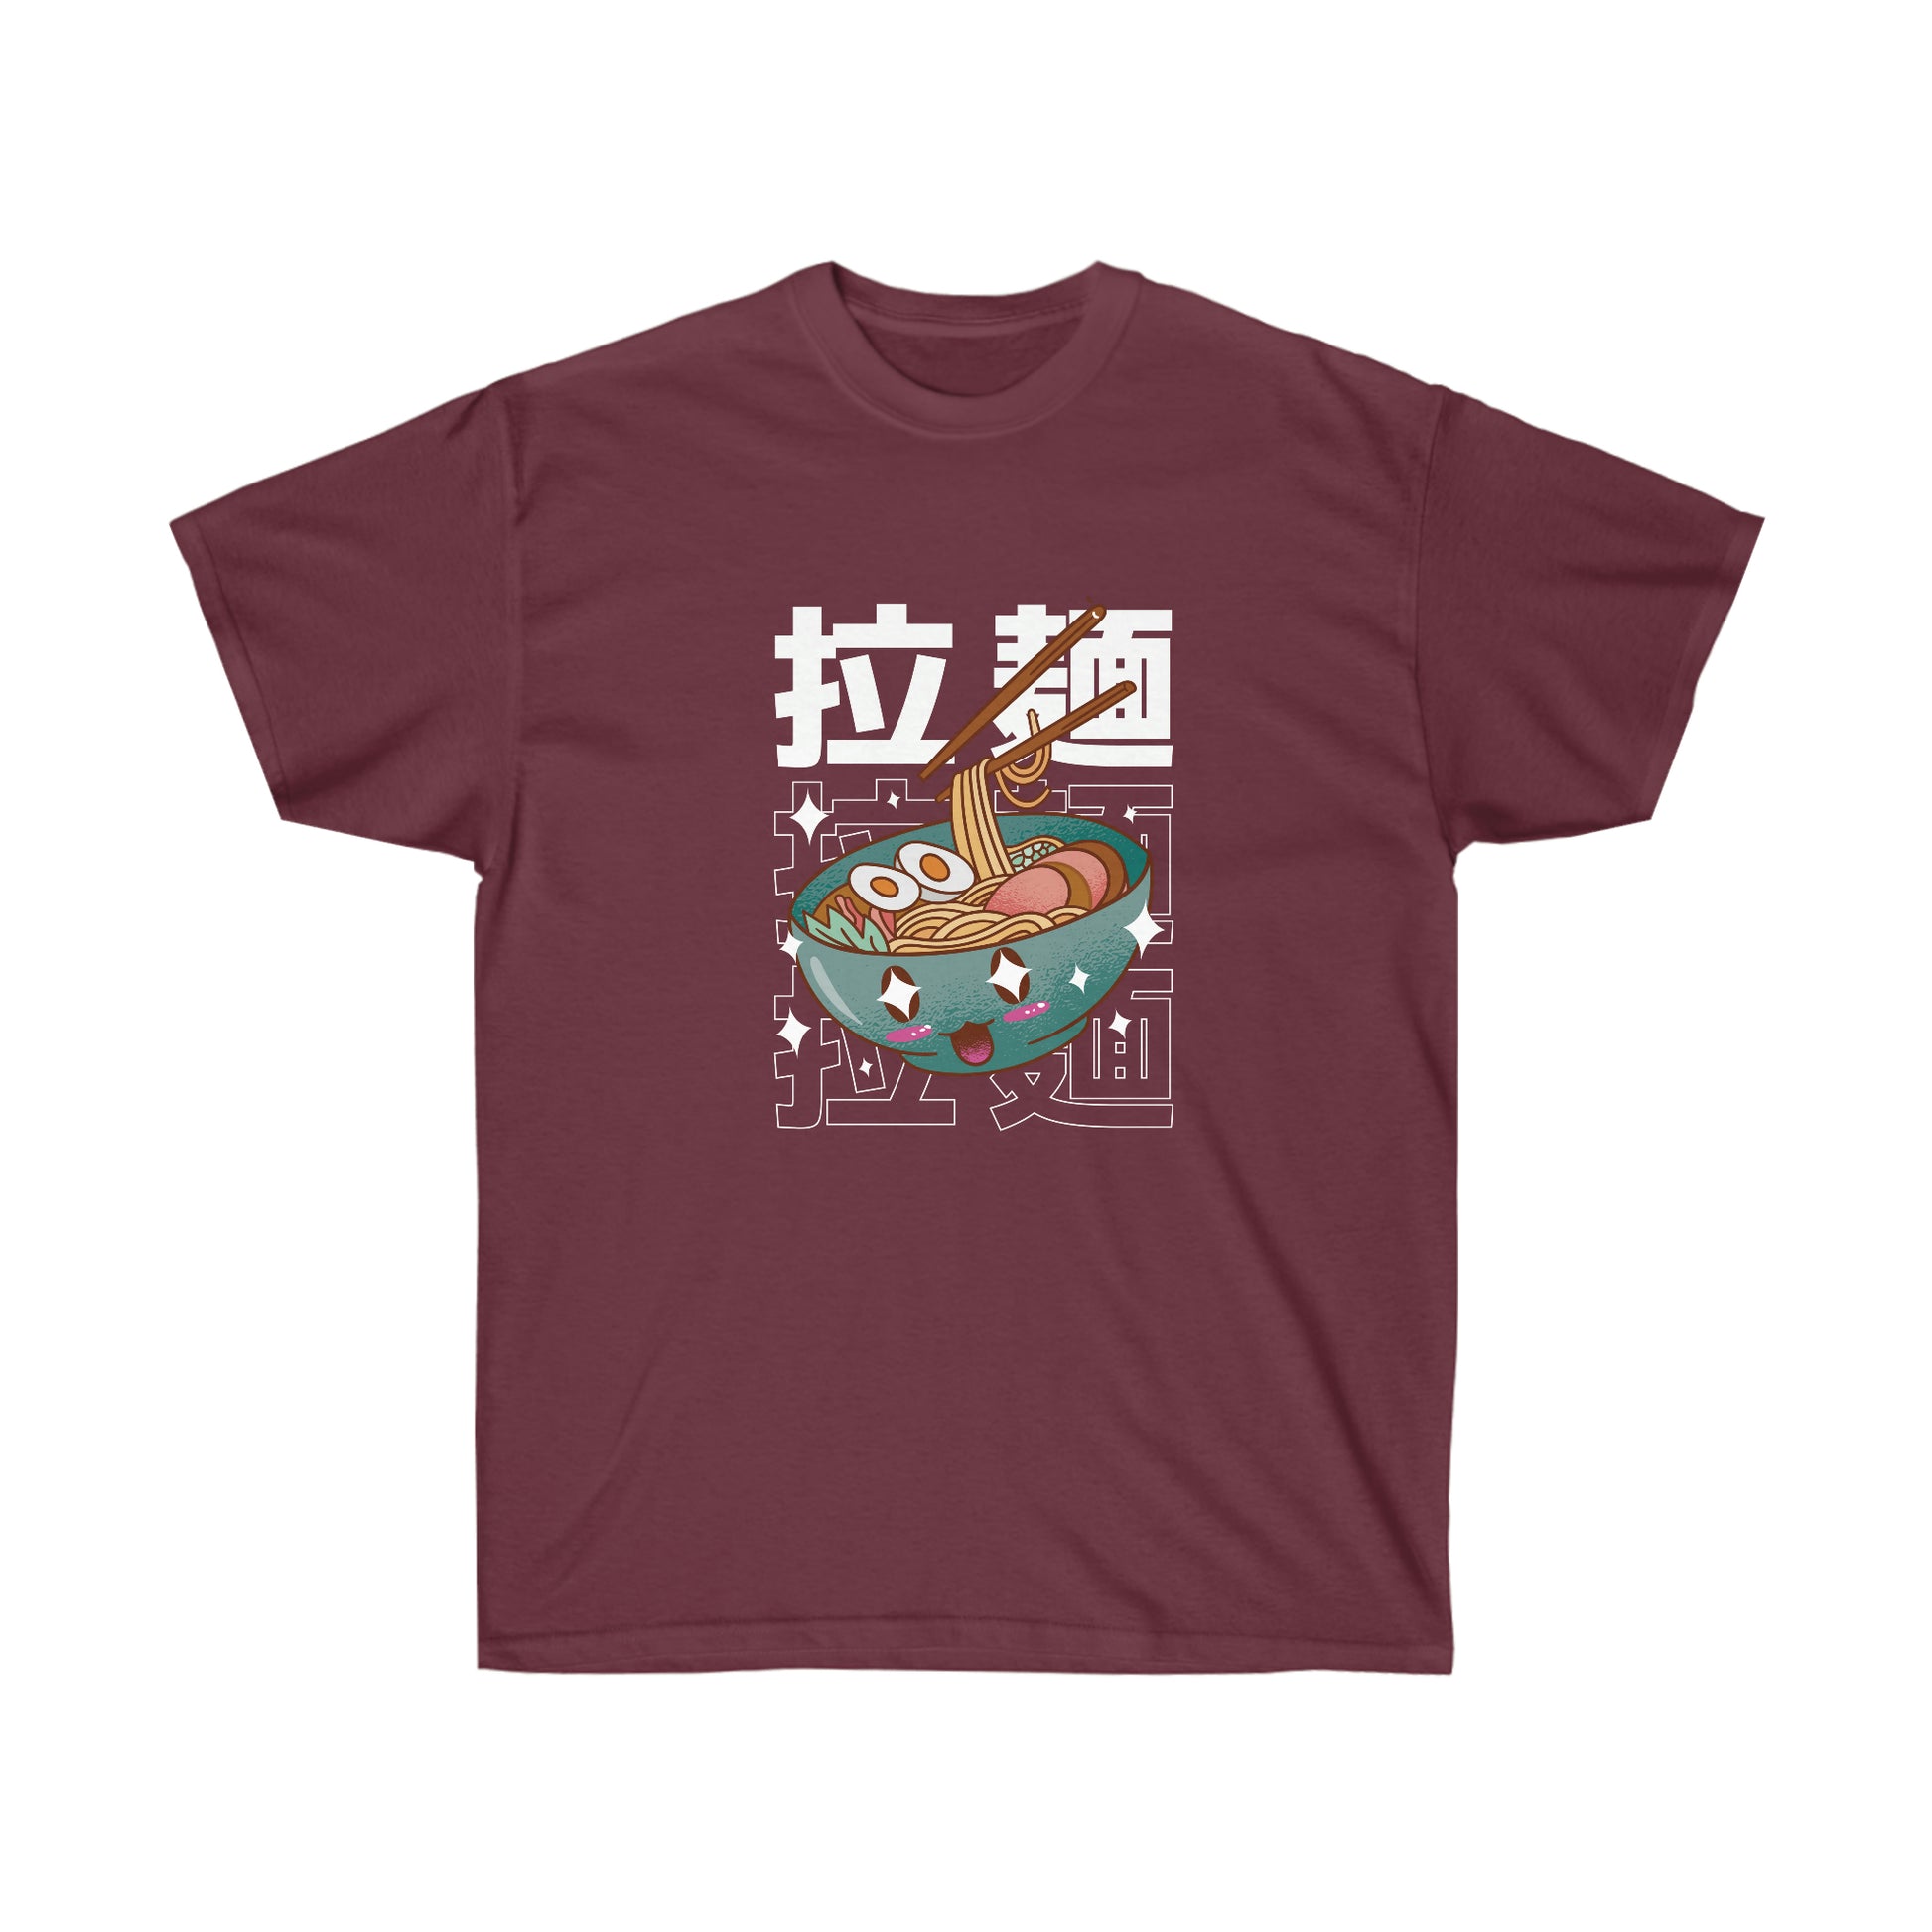 Kawaii Sweatshirt, Kawaii Clothing, Kawaii Clothes, Yami Kawaii Aesthetic, Pastel Kawaii Ramen Sweatshirt T-Shirt